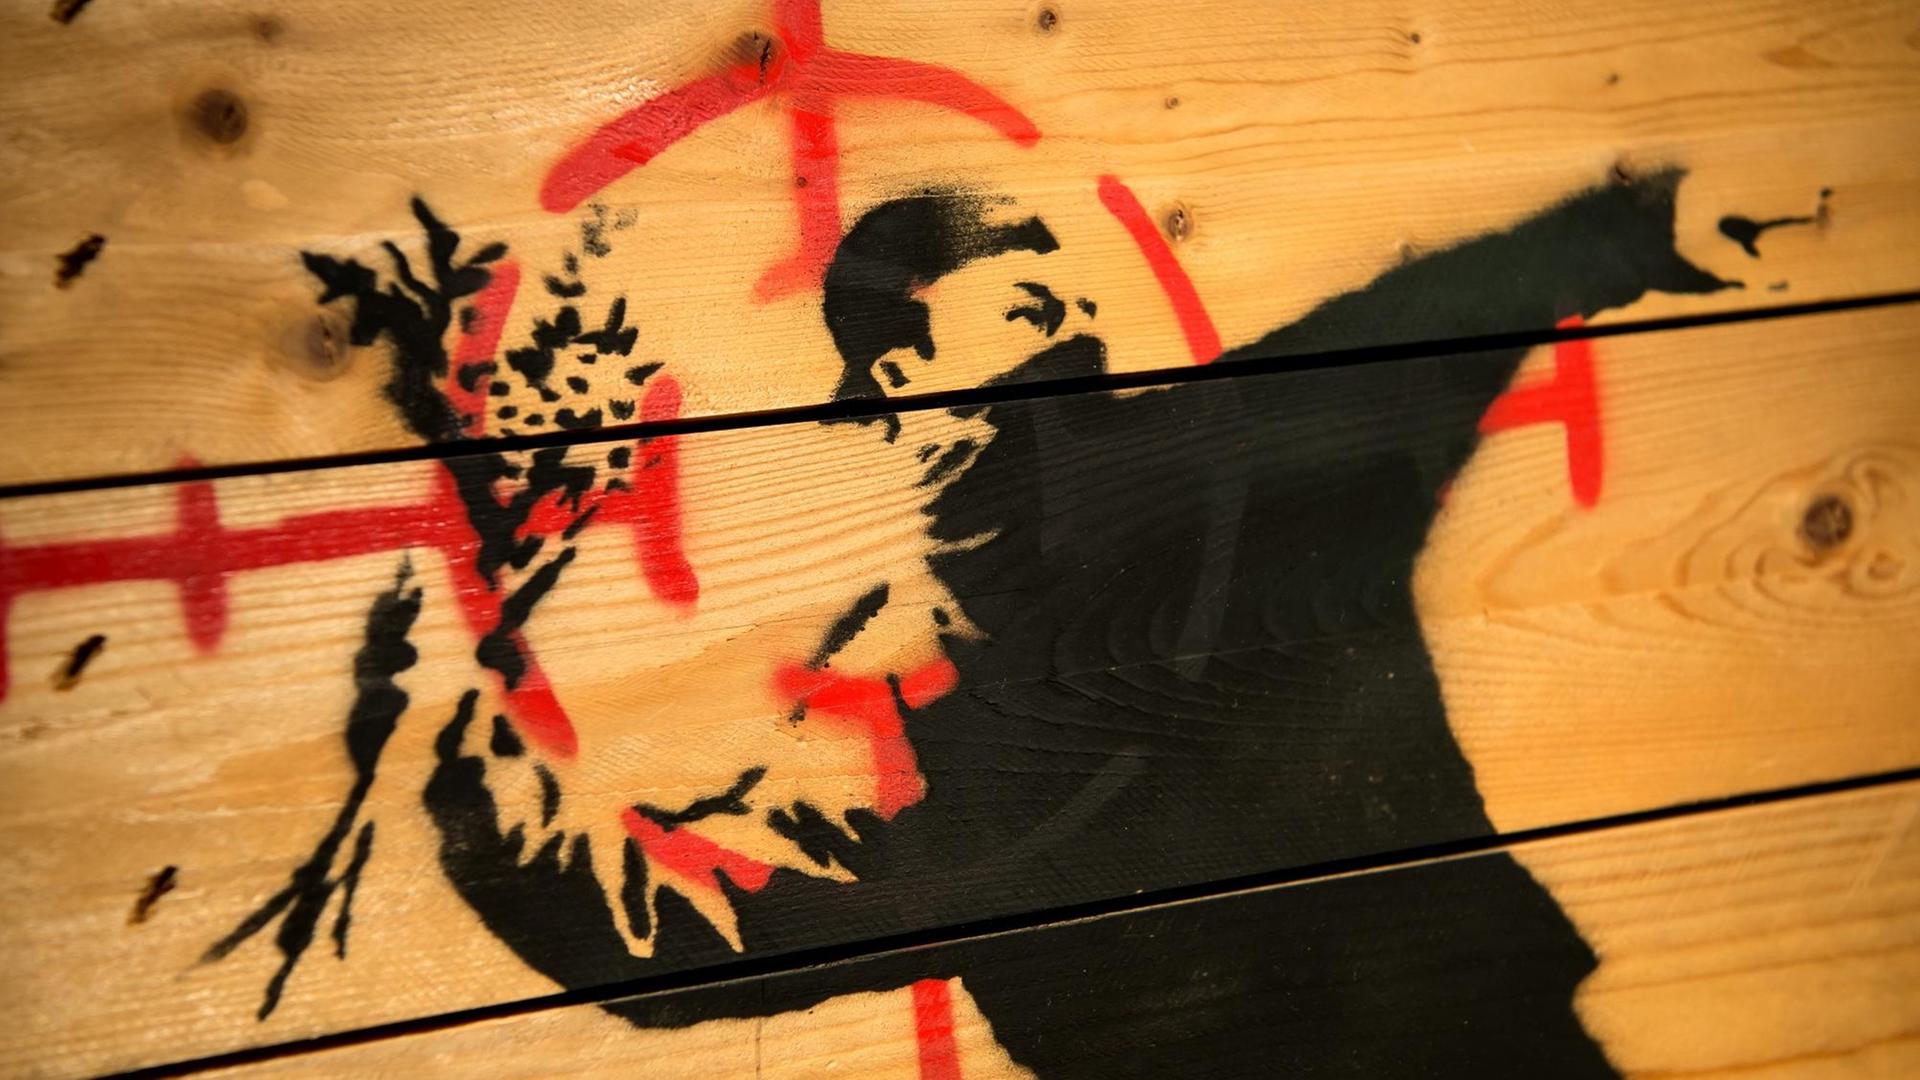 Graffii von Banksy zeigt einen Vermummten, der ausholt um einen Strauß Blumen zu werfen.